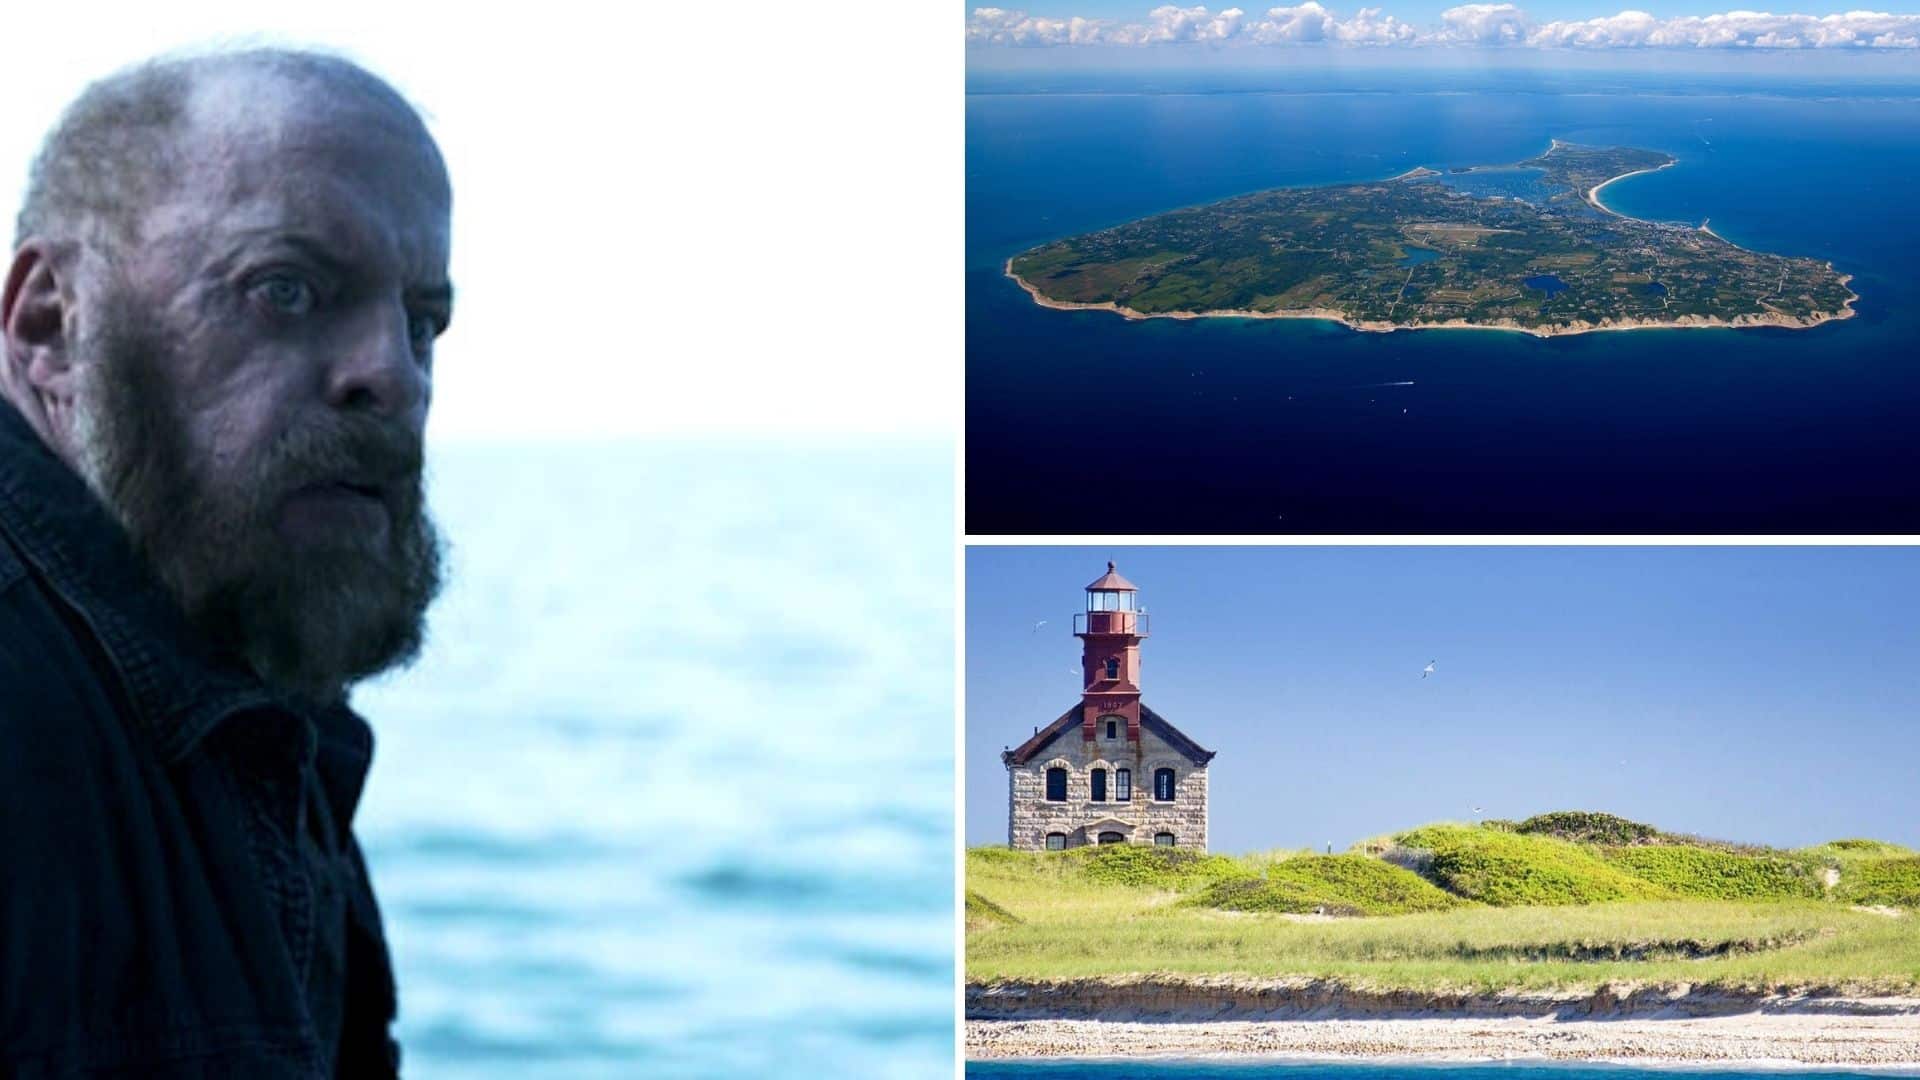 The Block Island Sound dove è stato girato? Le location del film Netflix